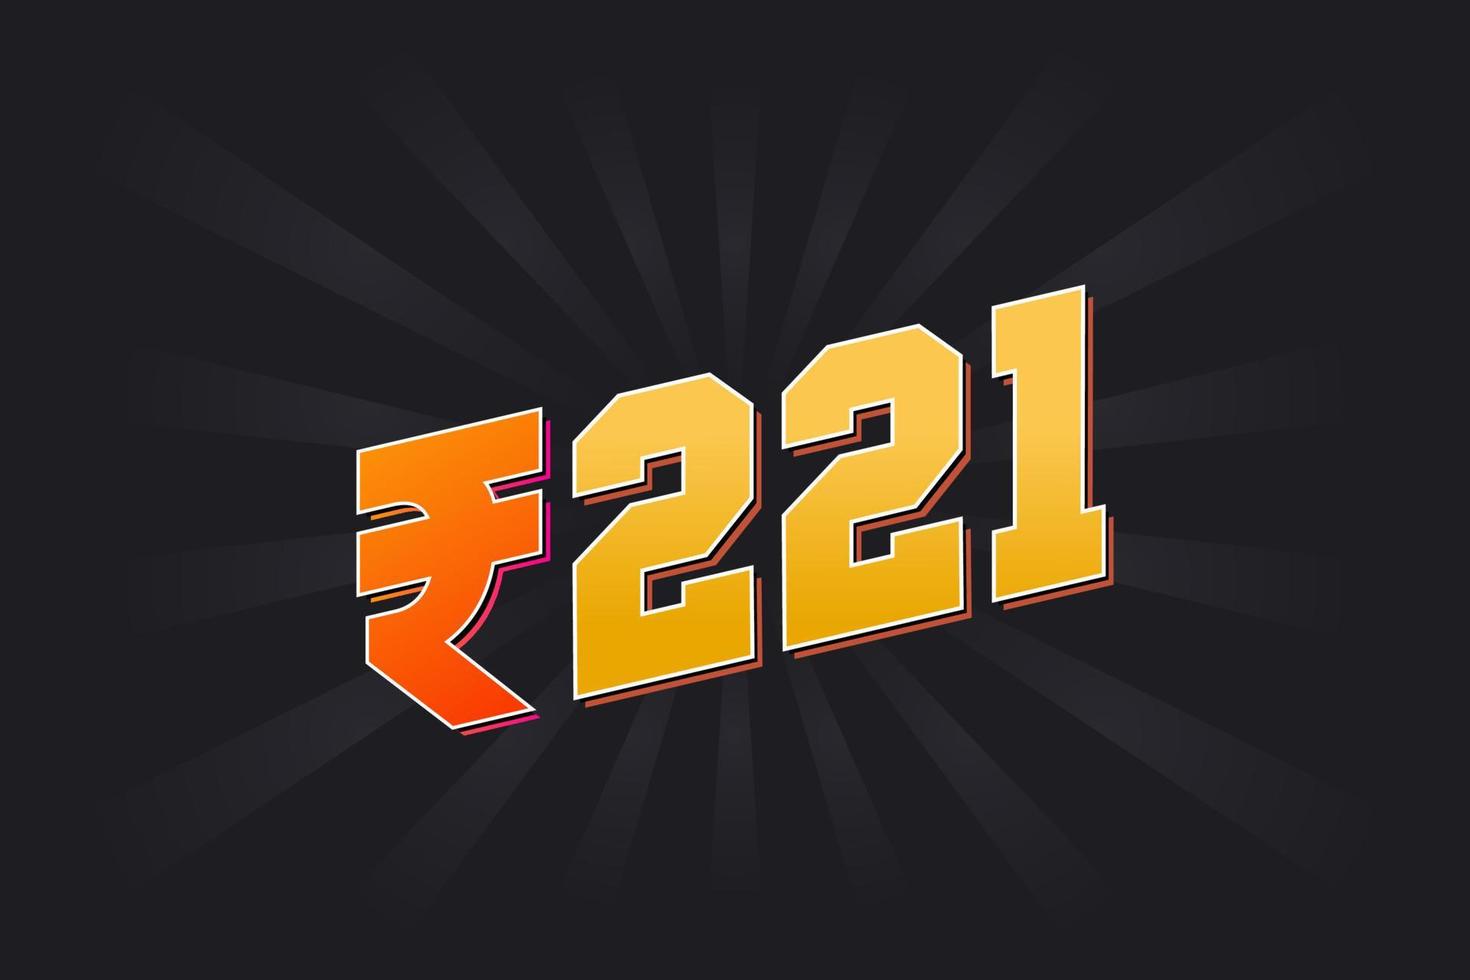 221 indisk rupee vektor valuta bild. 221 rupee symbol djärv text vektor illustration